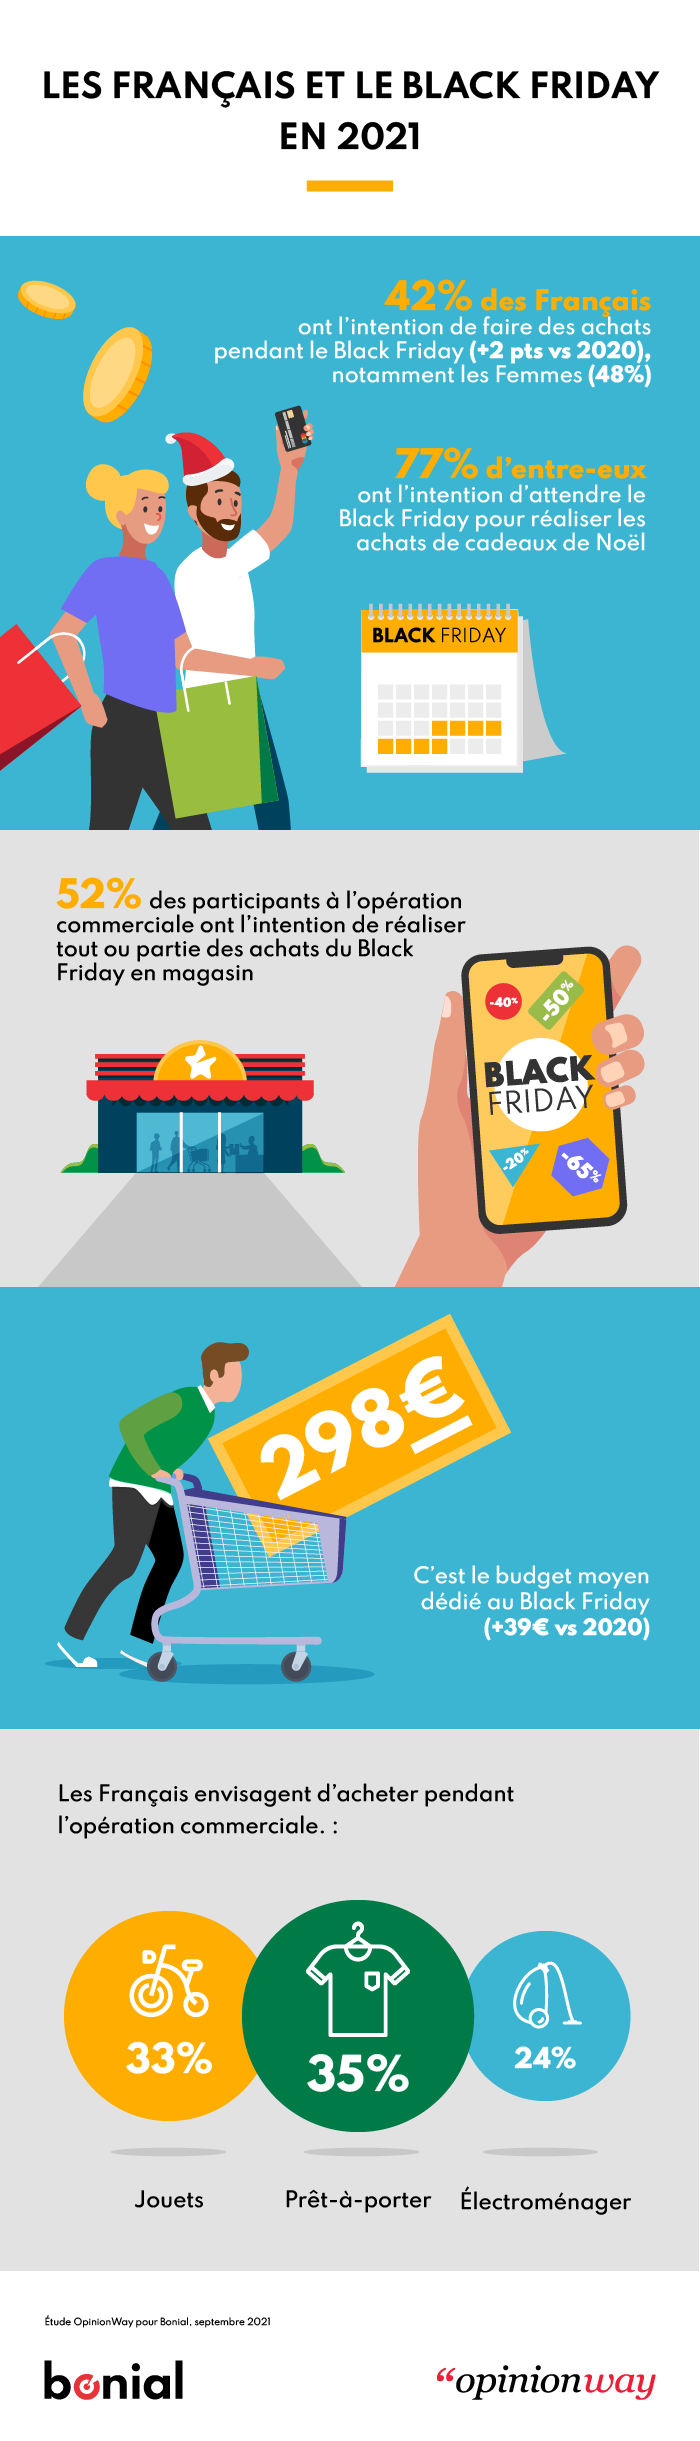 166-Infographie - Les FR et le Black Friday en 2021-CONTENT MARKETING (1)